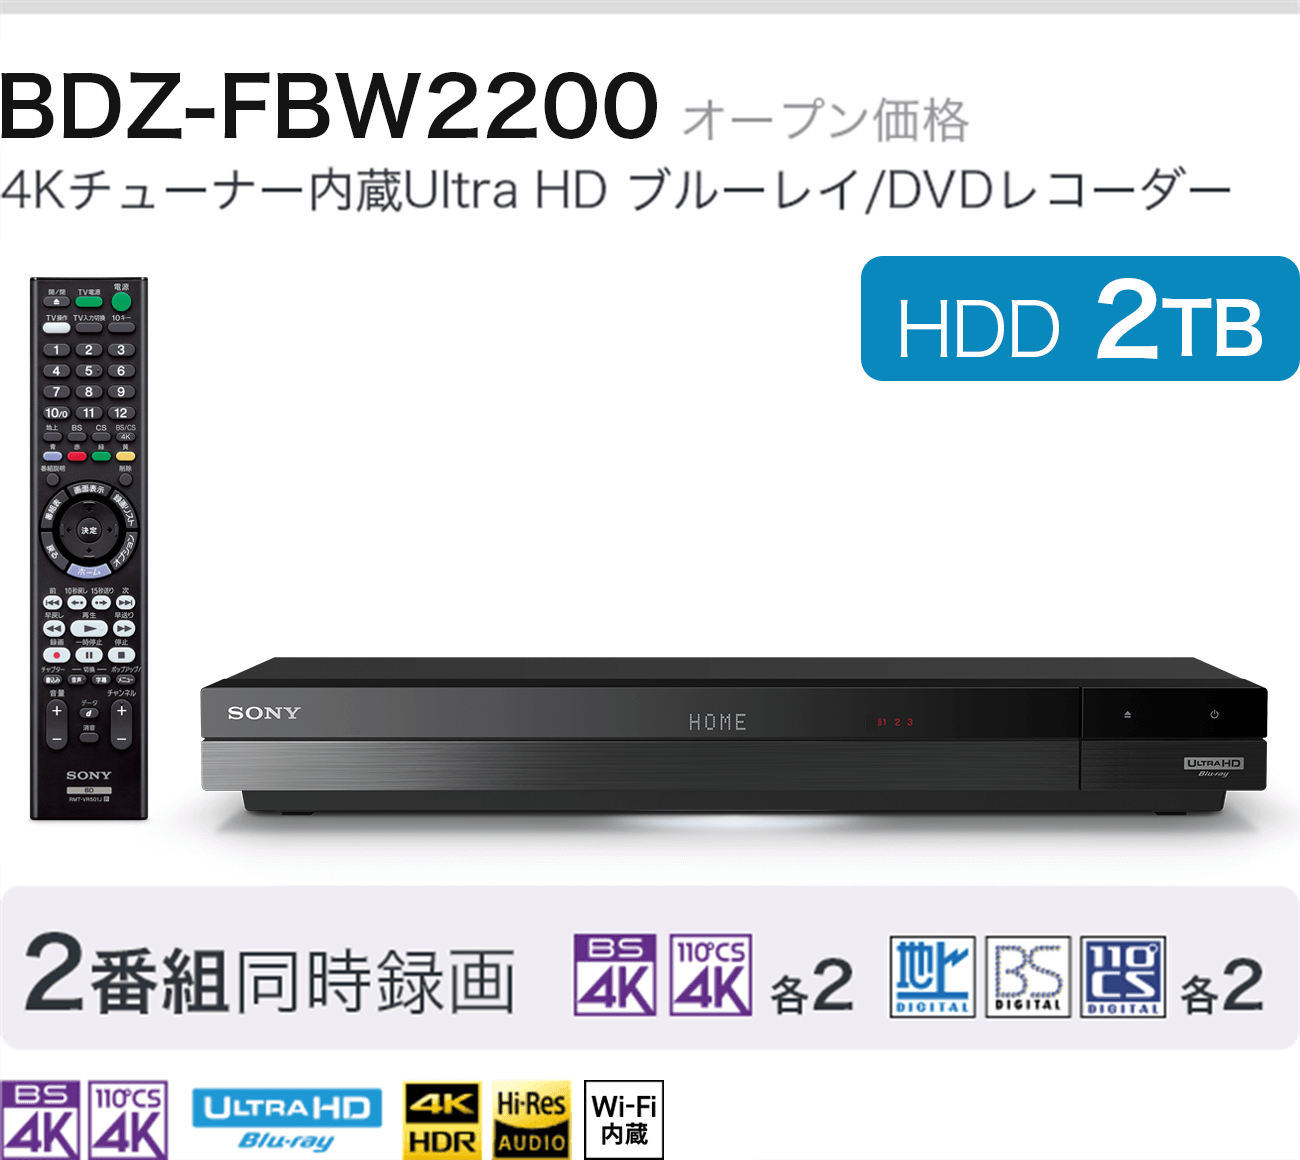 BDZ-FBW2200 I[vi 4K`[i[Ultra HD u[C/DVDR[_[ HDD 2TB 2ԑg^